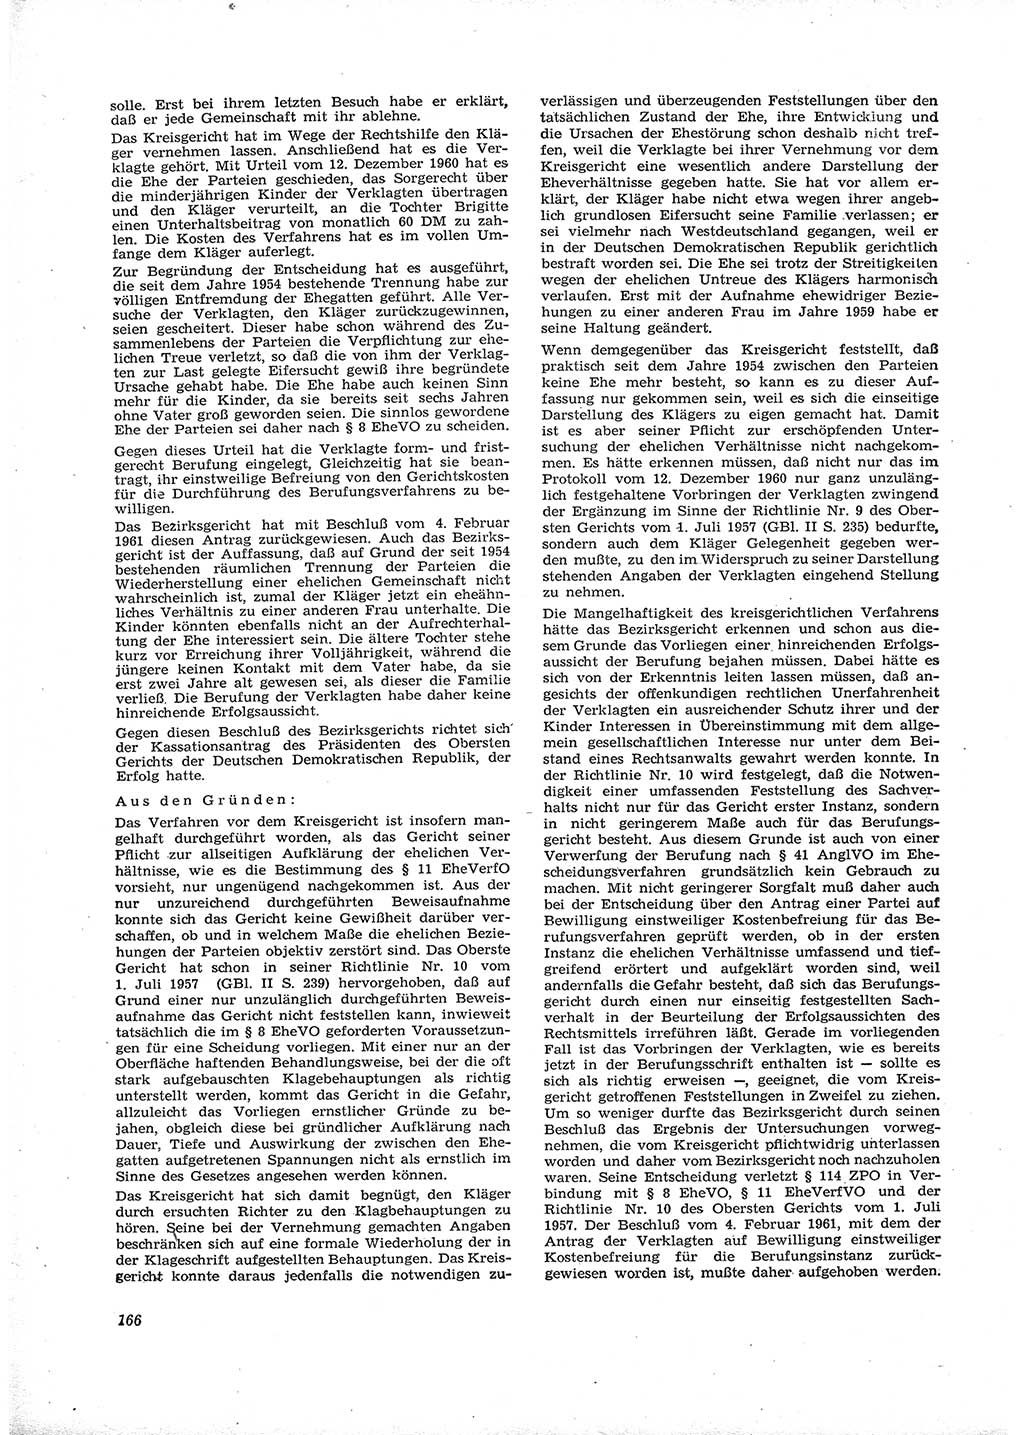 Neue Justiz (NJ), Zeitschrift für Recht und Rechtswissenschaft [Deutsche Demokratische Republik (DDR)], 16. Jahrgang 1962, Seite 166 (NJ DDR 1962, S. 166)